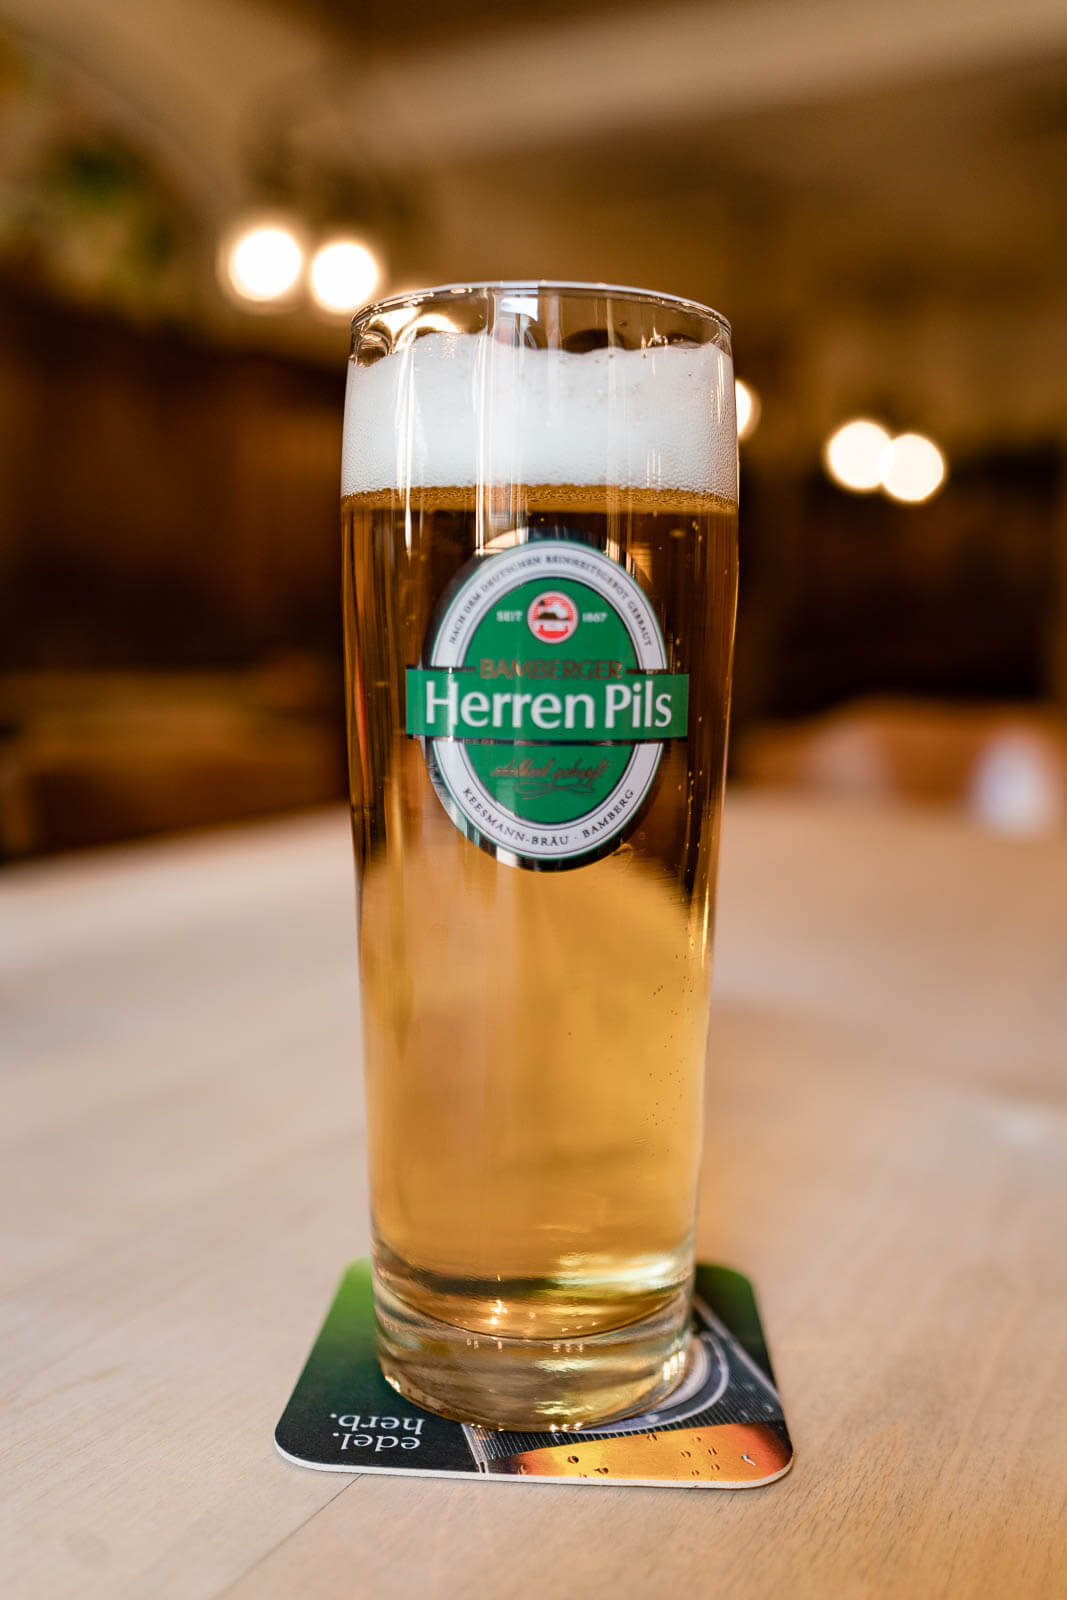 Herren Pils beer from Bamberg Germany